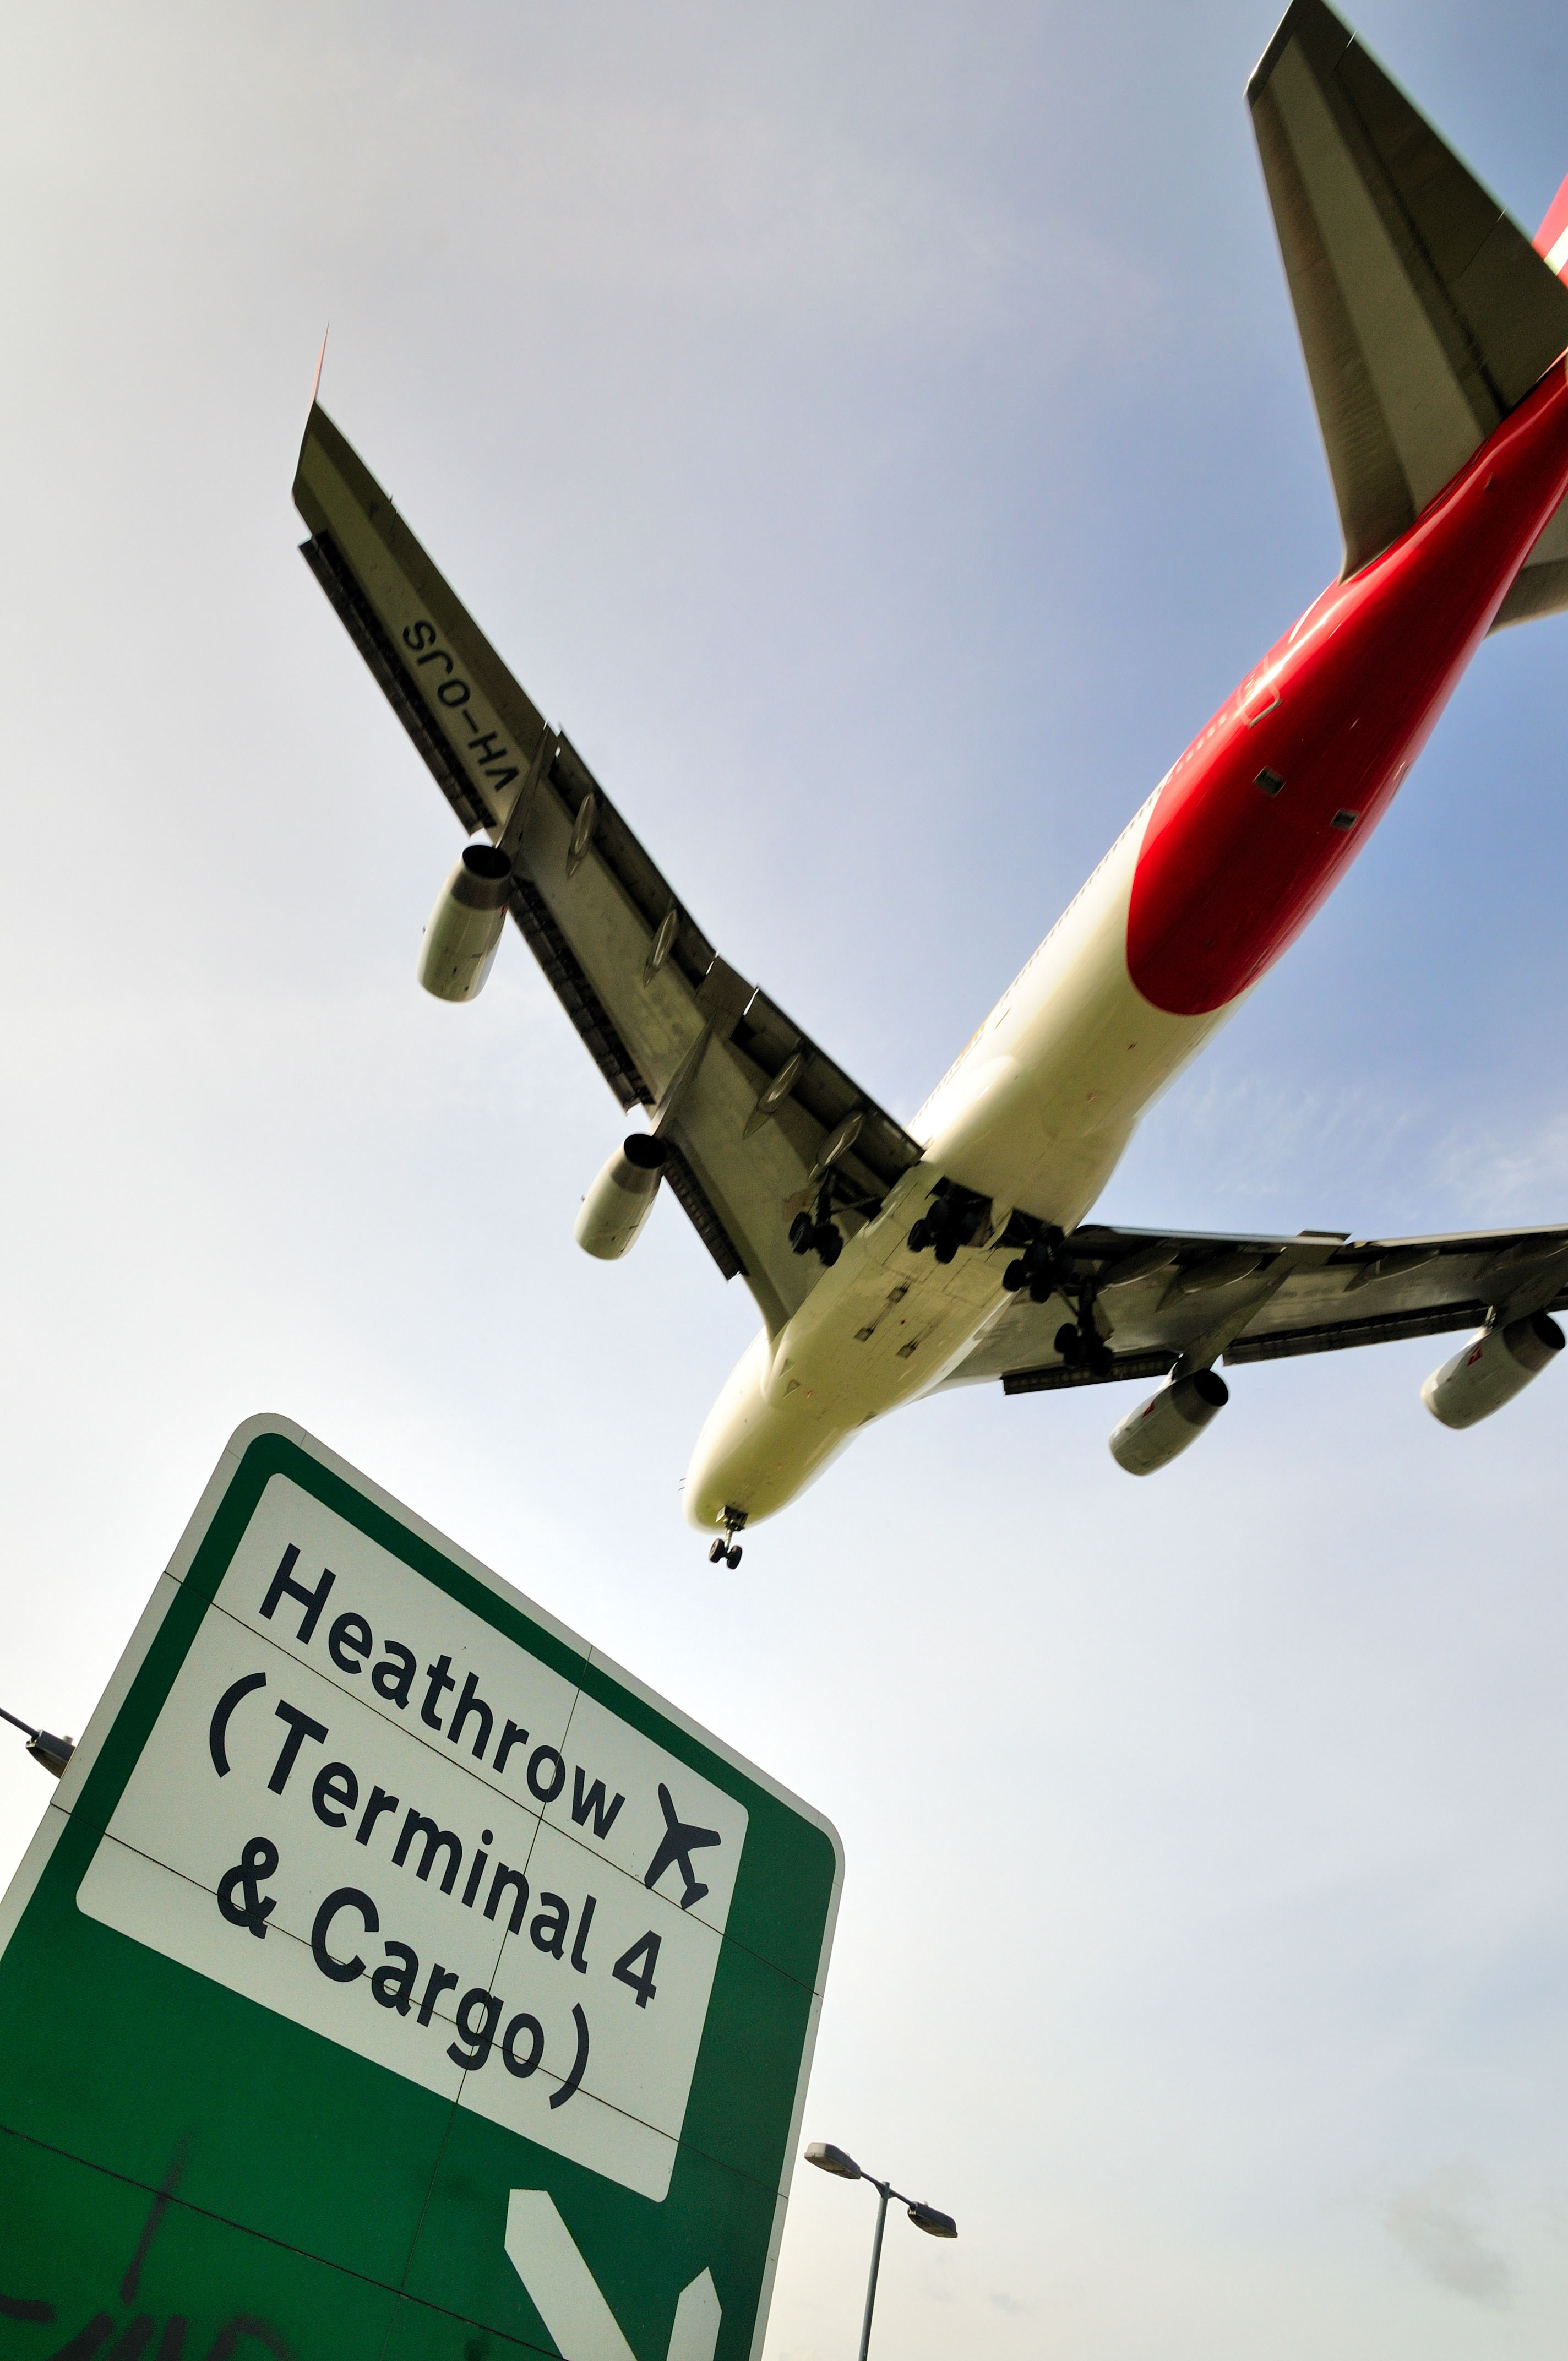 Die Wettbewerbsbehörde hat eine Entscheidung der Zivilluftfahrtbehörde unterstützt, die Obergrenze für die durchschnittliche Gebühr pro Passagier in Heathrow zu senken